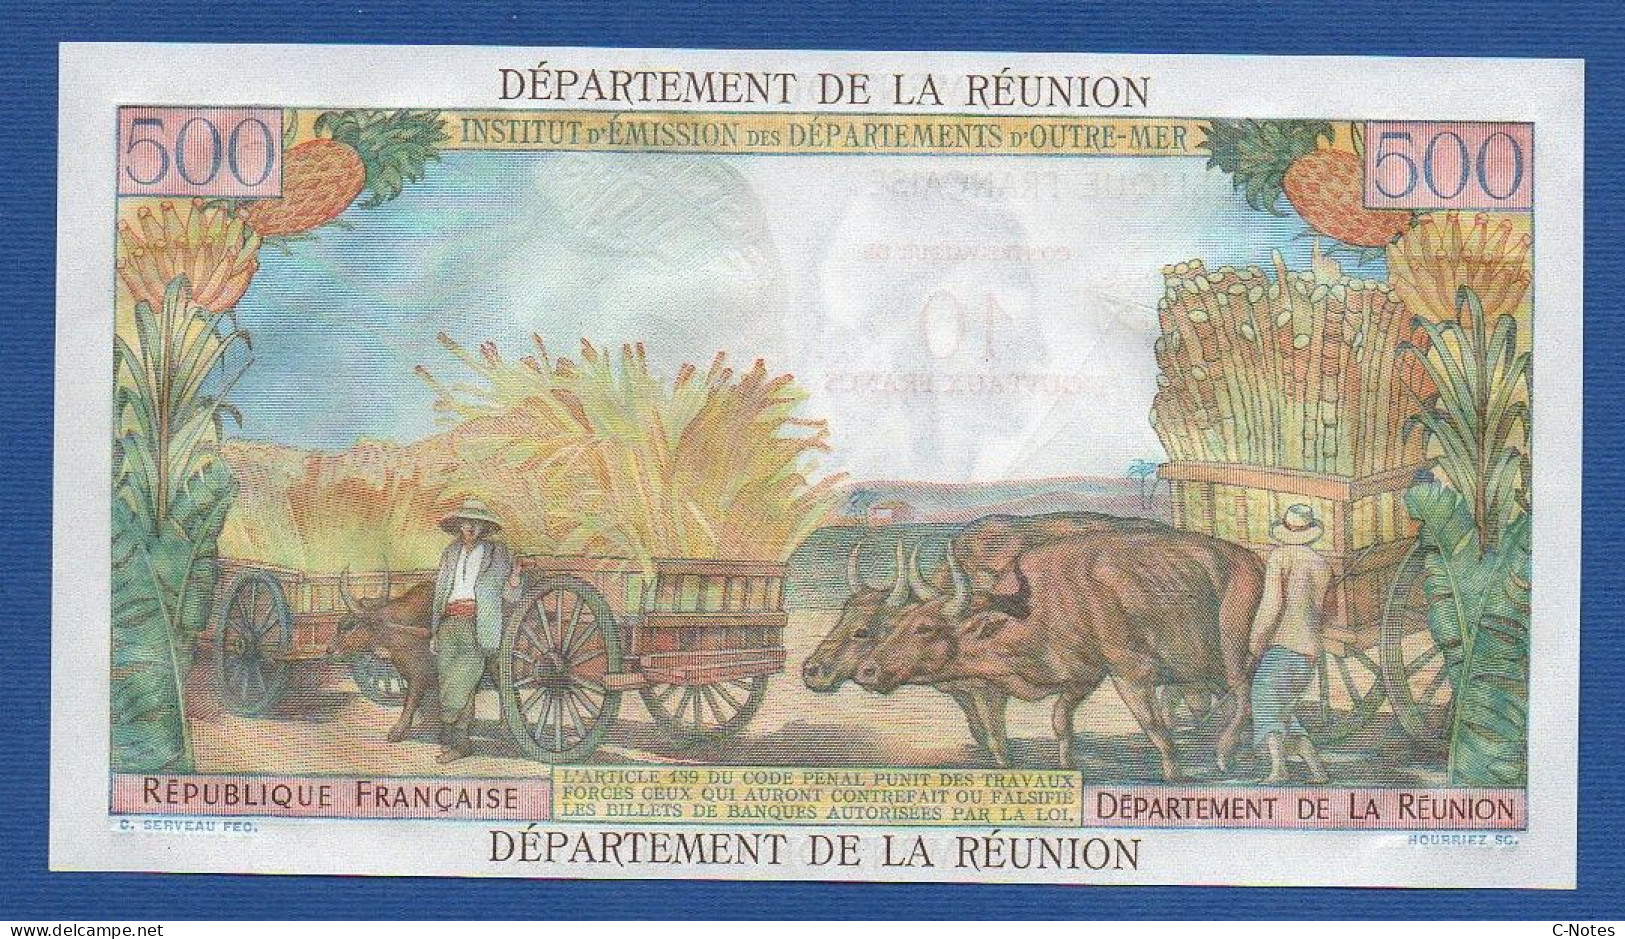 RÉUNION - P.54b – 10 Nouveaux Francs ND (1971) UNC, S/n W.1 82730 - Réunion